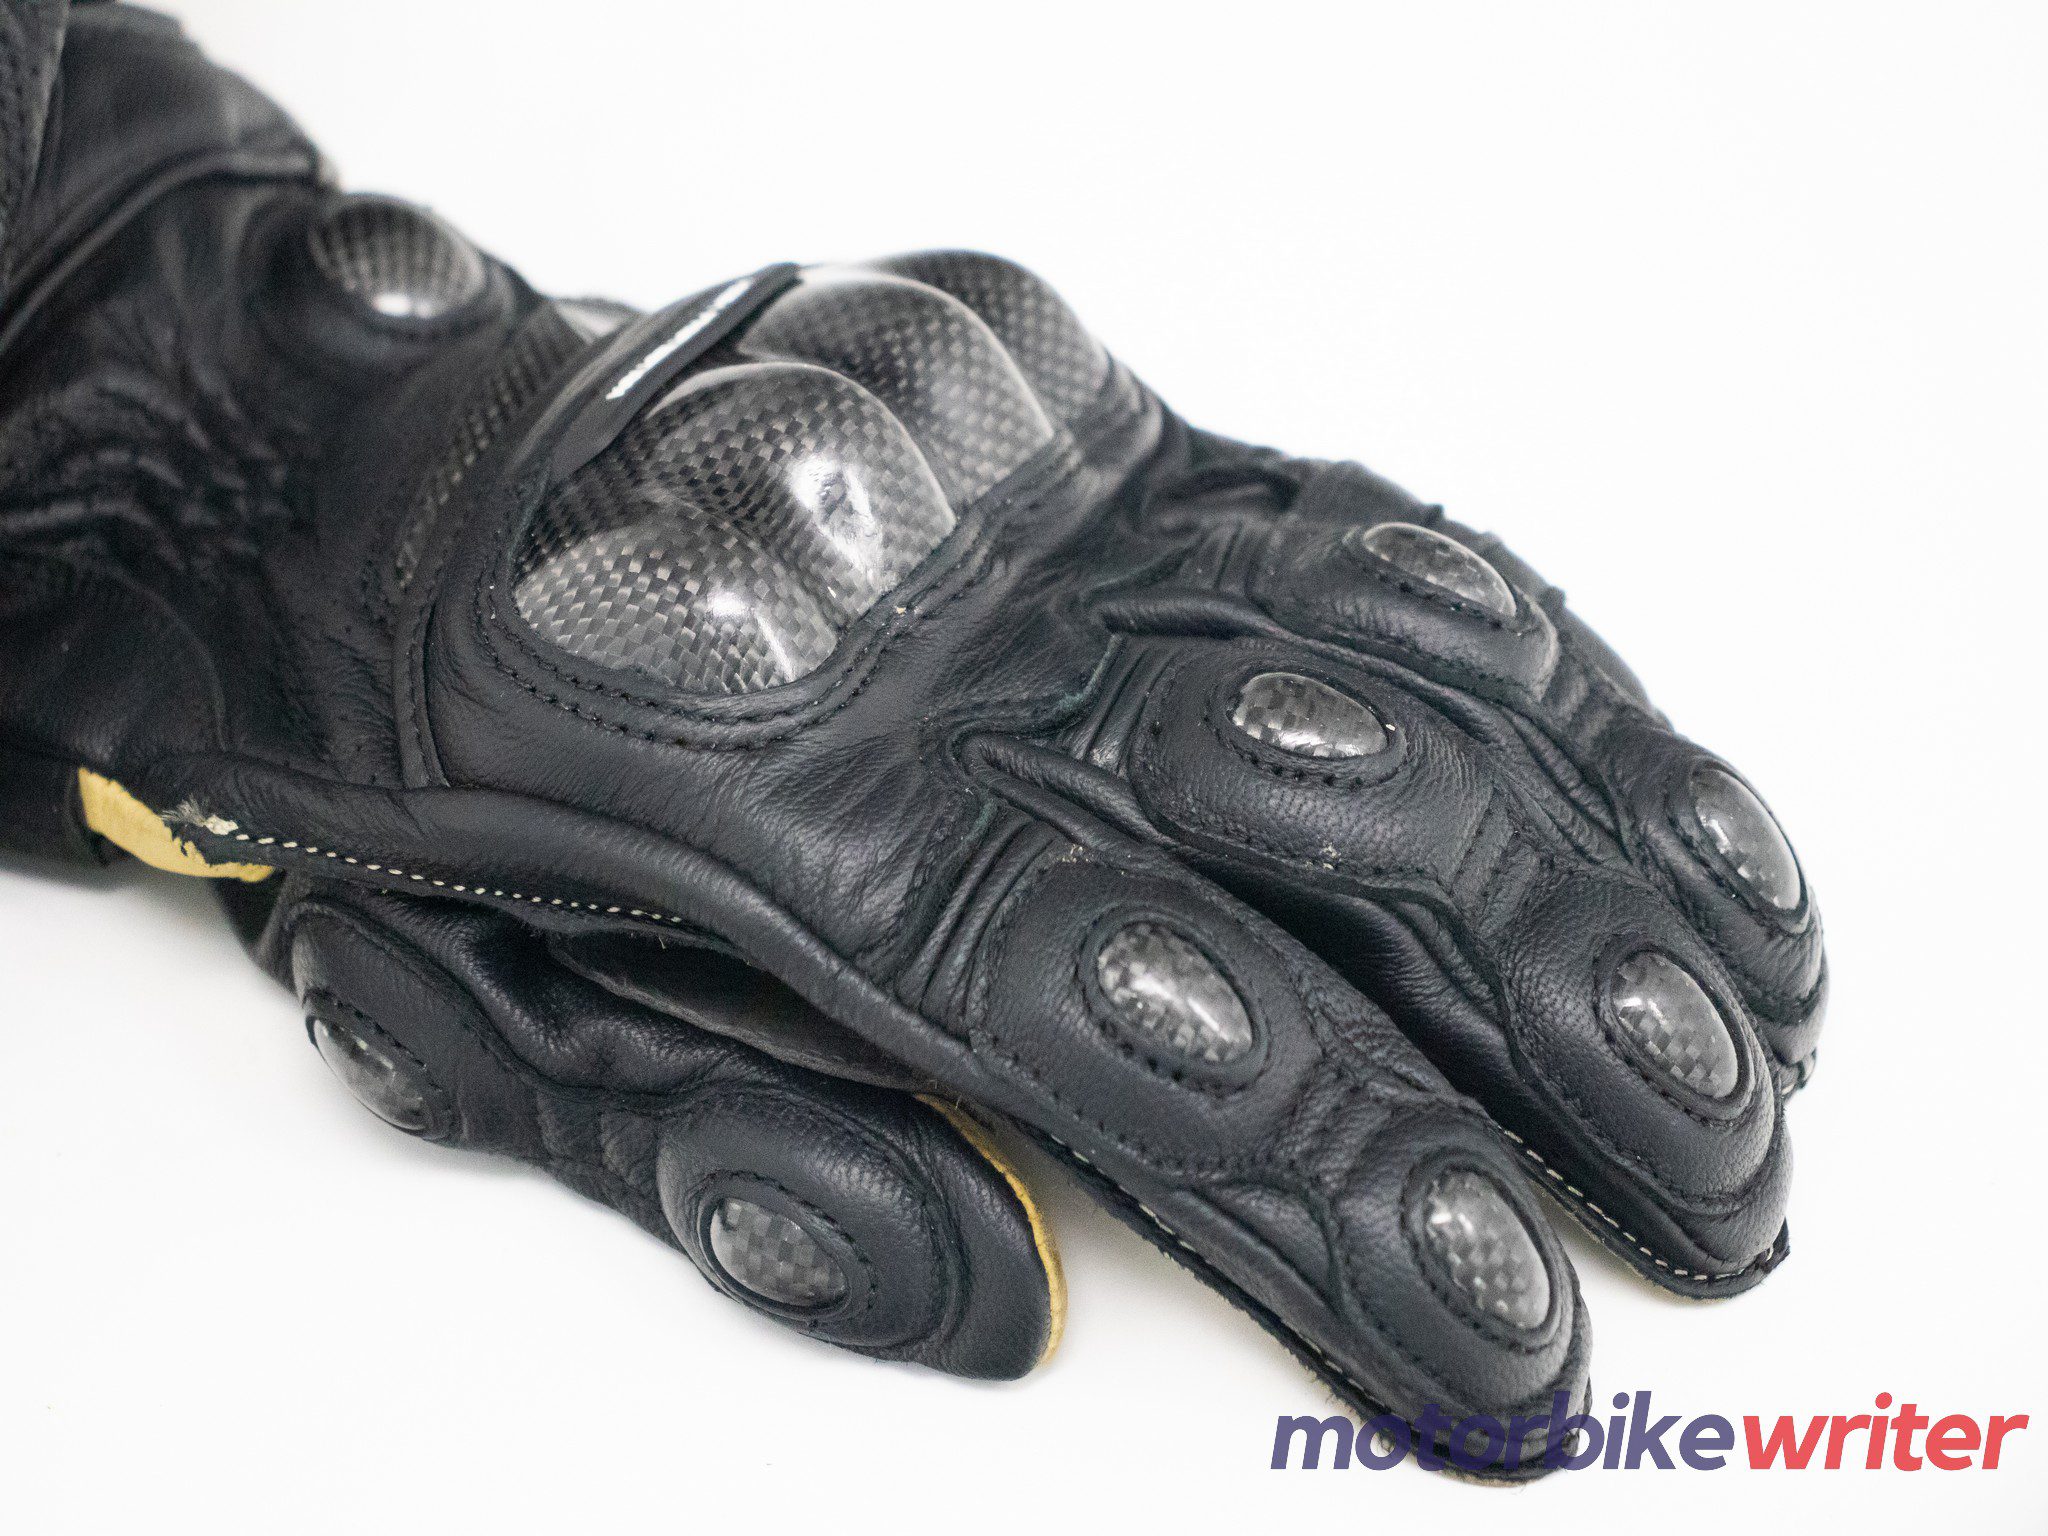 Carbon fiber knuckle protectors on High Racer gloves